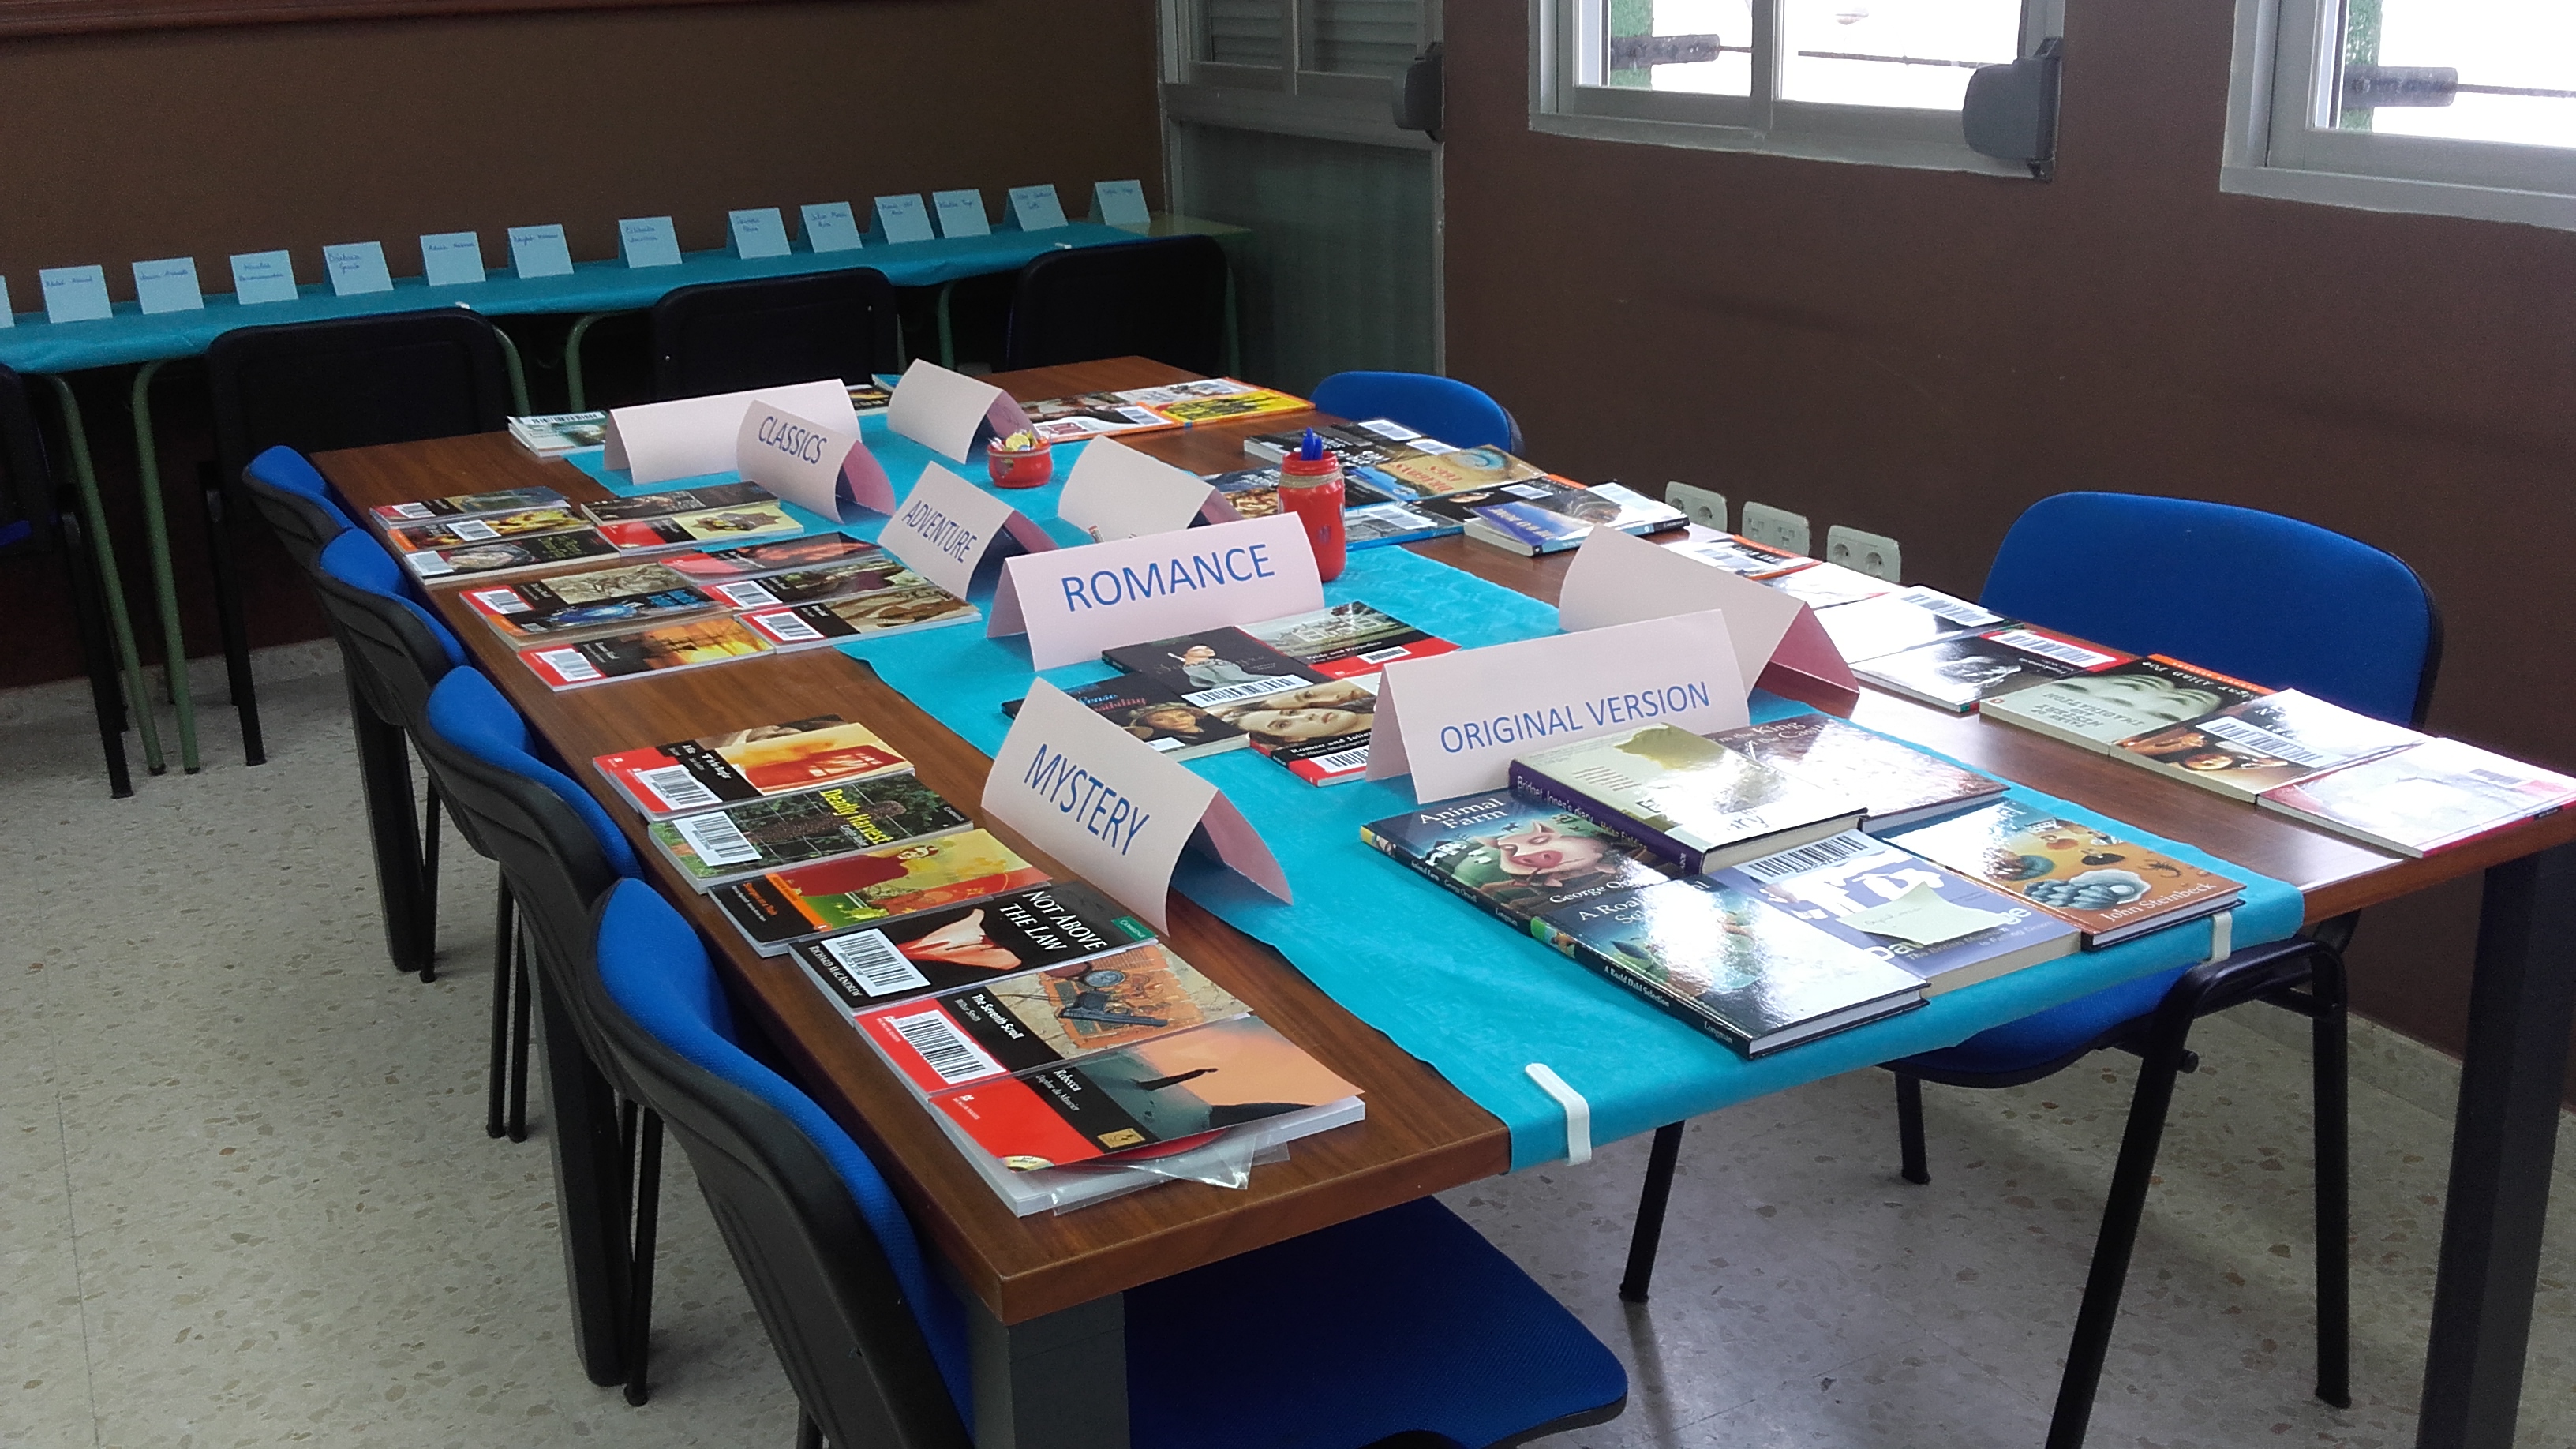 El departamento de inglés ha organizado una cata de libros en la que los alumnos han probado diferentes libros y compartido sus impresiones sobre sus libros favoritos.